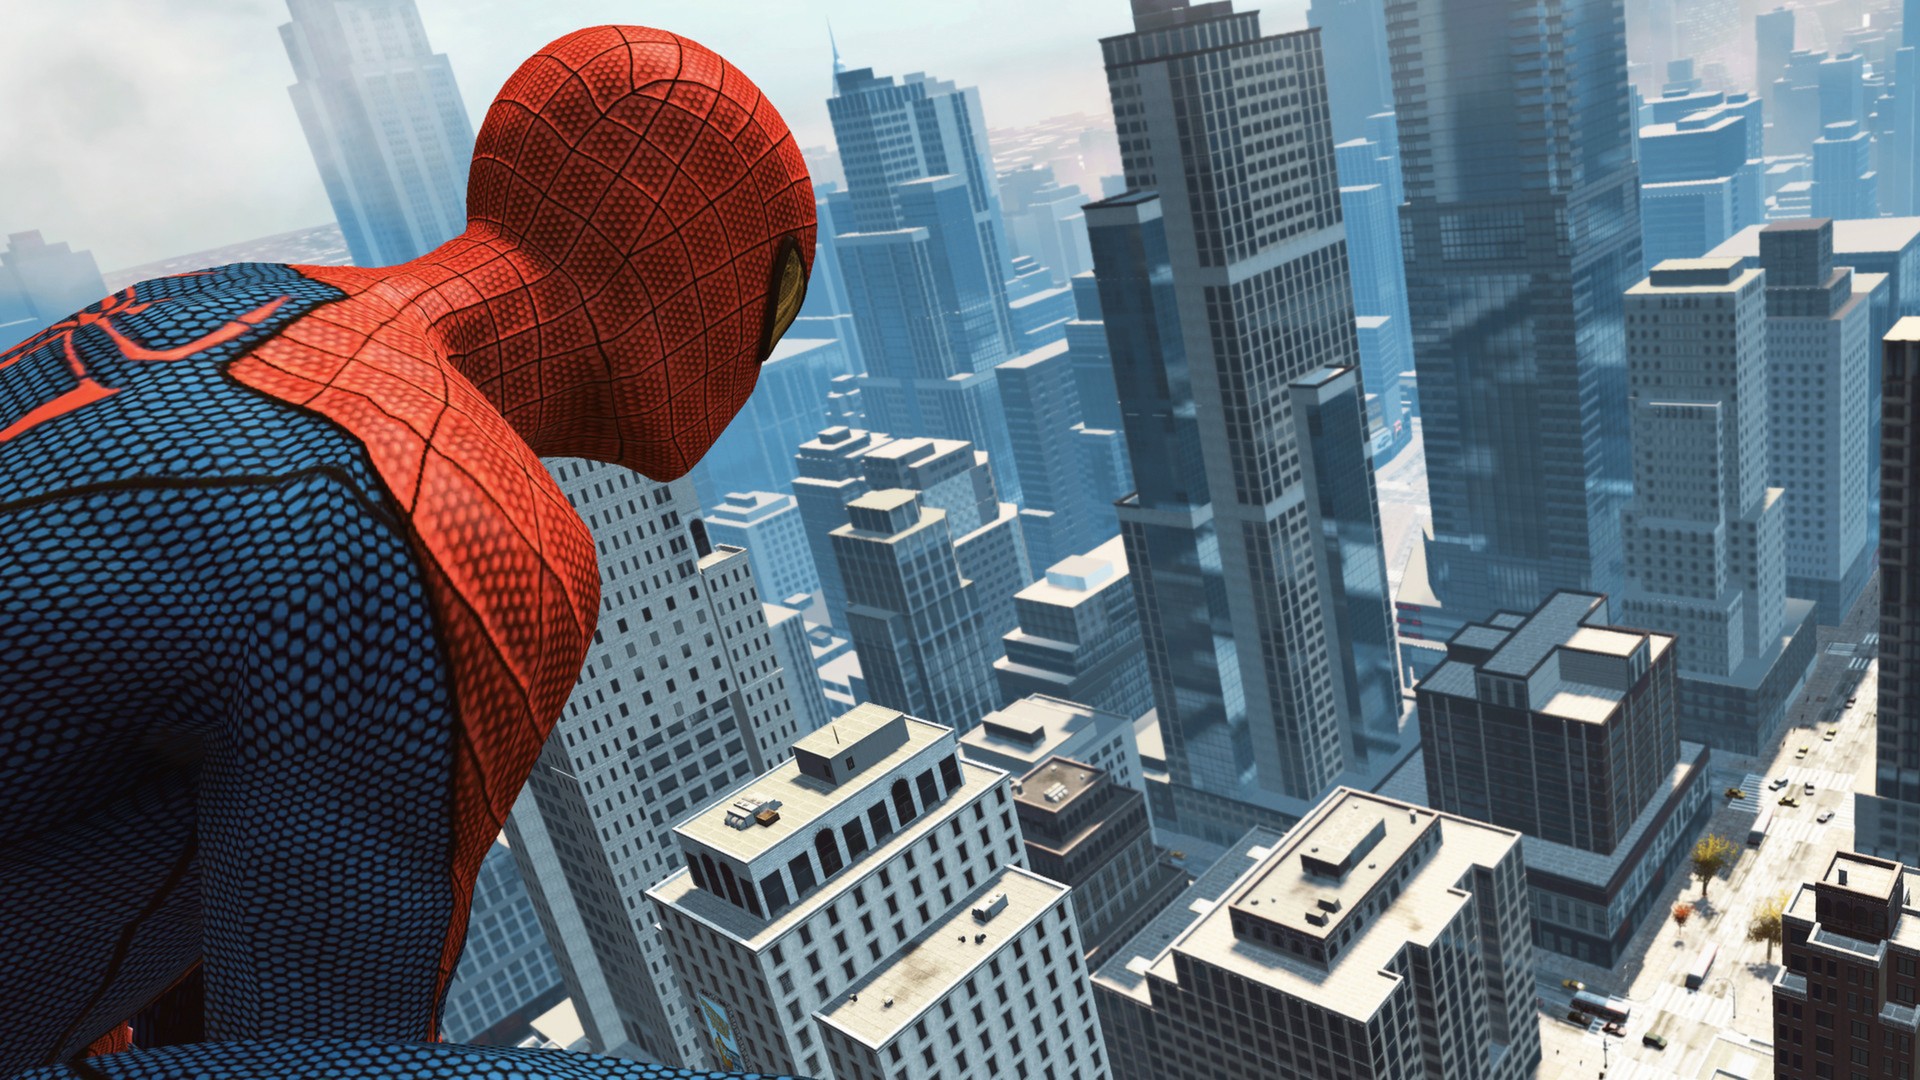 Маркет человек паук. Спайдер Мэн. The amazing Spider-man (игра, 2012). Эмэйзинг Спайдер Мэн. Эмейзинг человек паук игра.